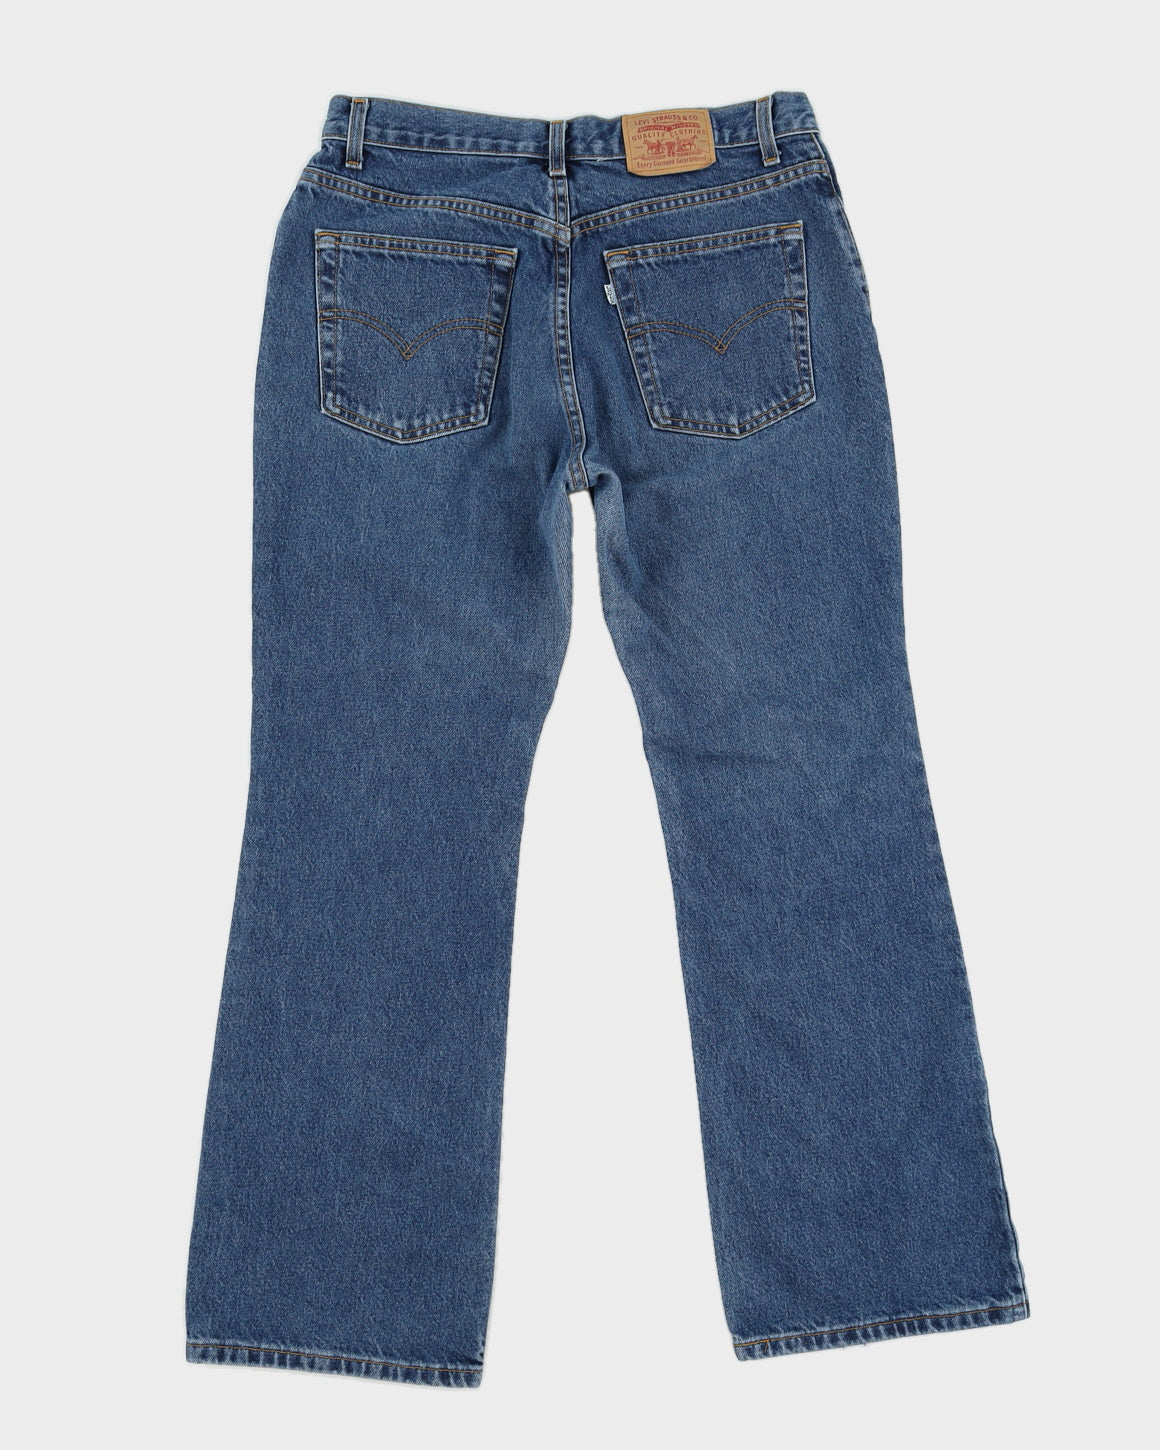 Vintage 80s Levi's White Tab Blue Jeans - W32 L30